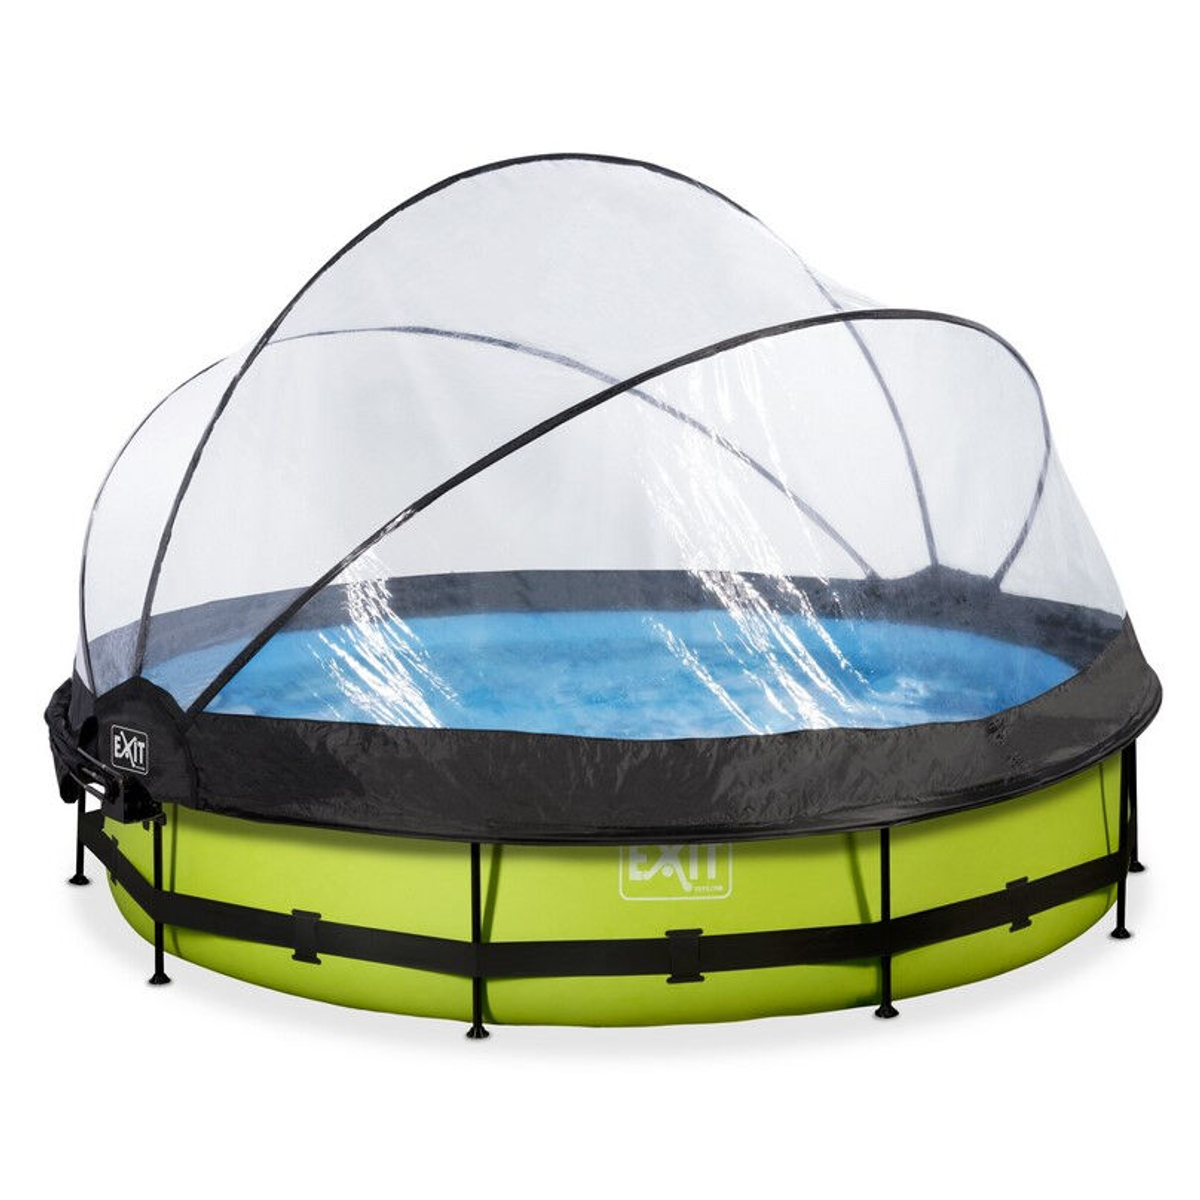 EXIT Lime zwembad ø360x76cm met overkapping, schaduwdoek en filterpomp - groen